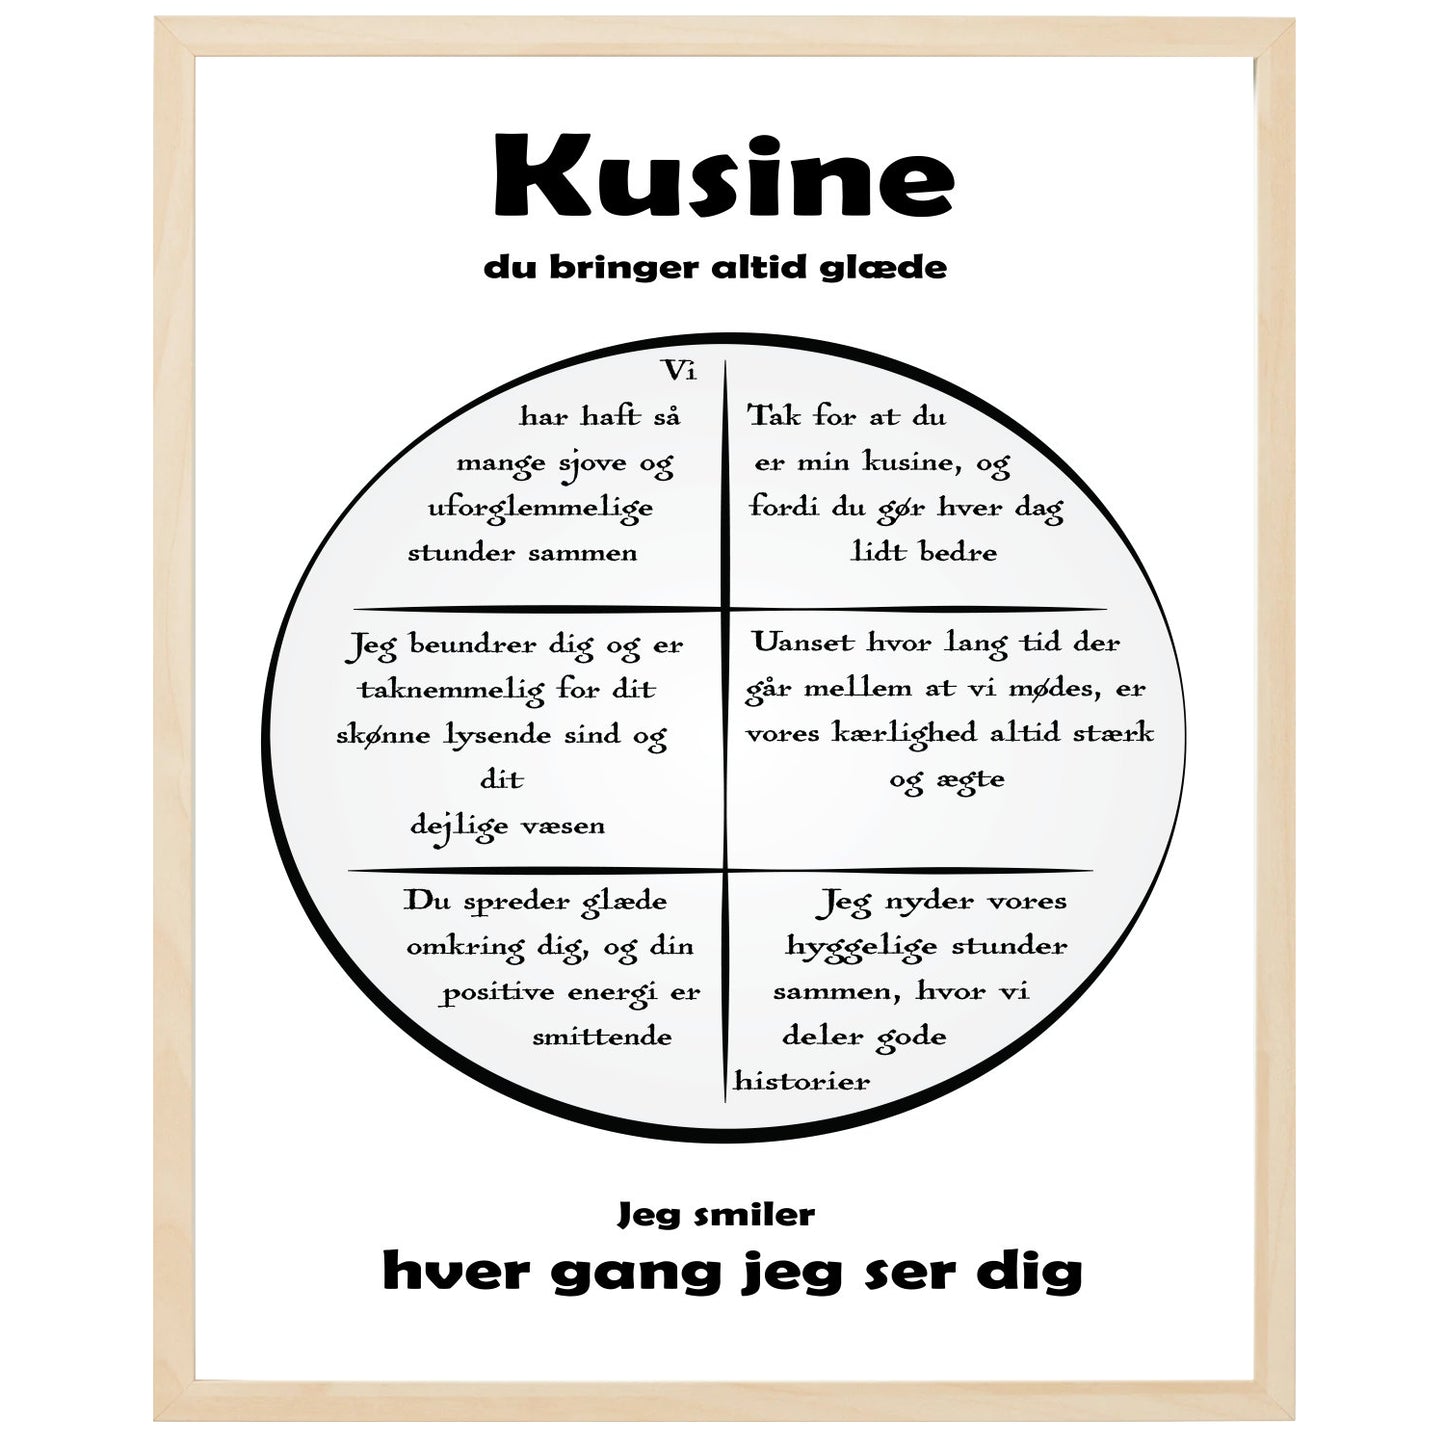 En plakat med overskriften Kusine, en rustik cirkel og indeni cirklen mange positive sætninger som beskriver en Kusine